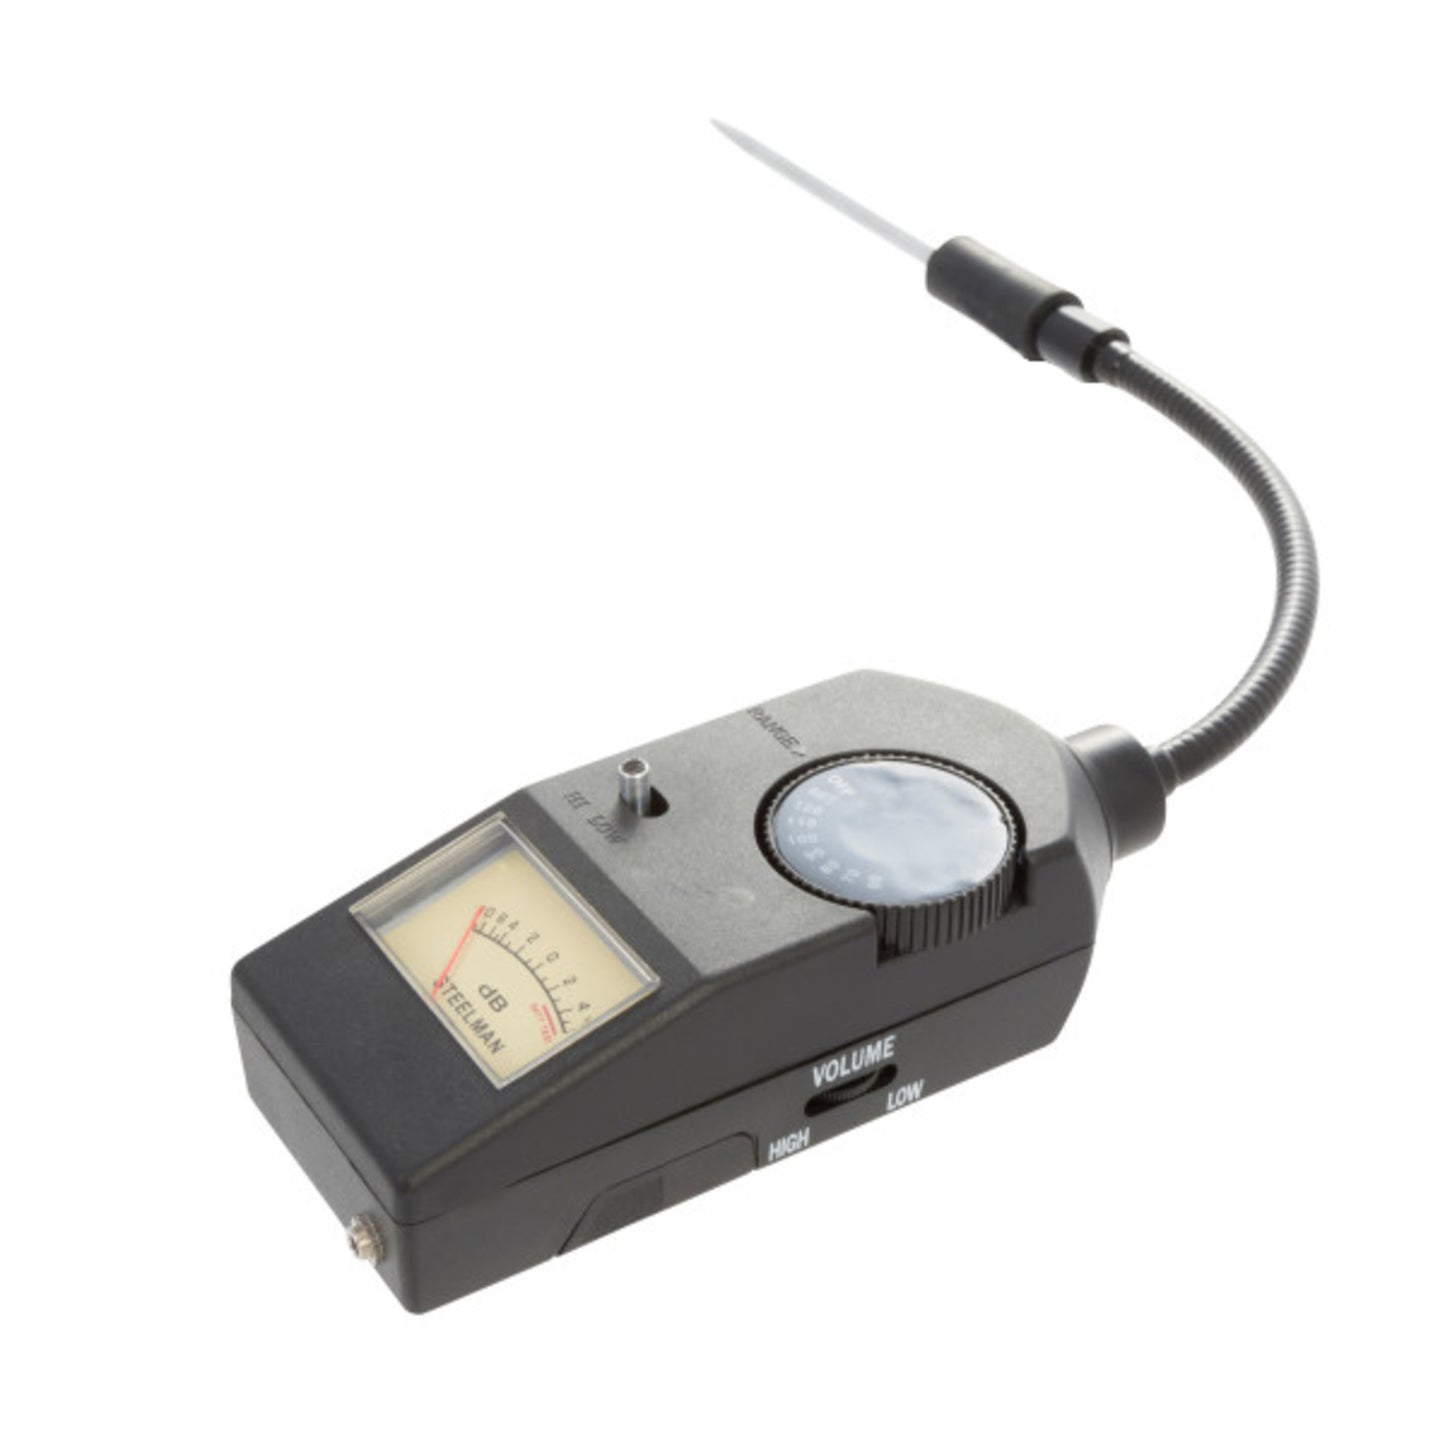 Decibel Meter Replacement for EngineEAR II Stethoscope